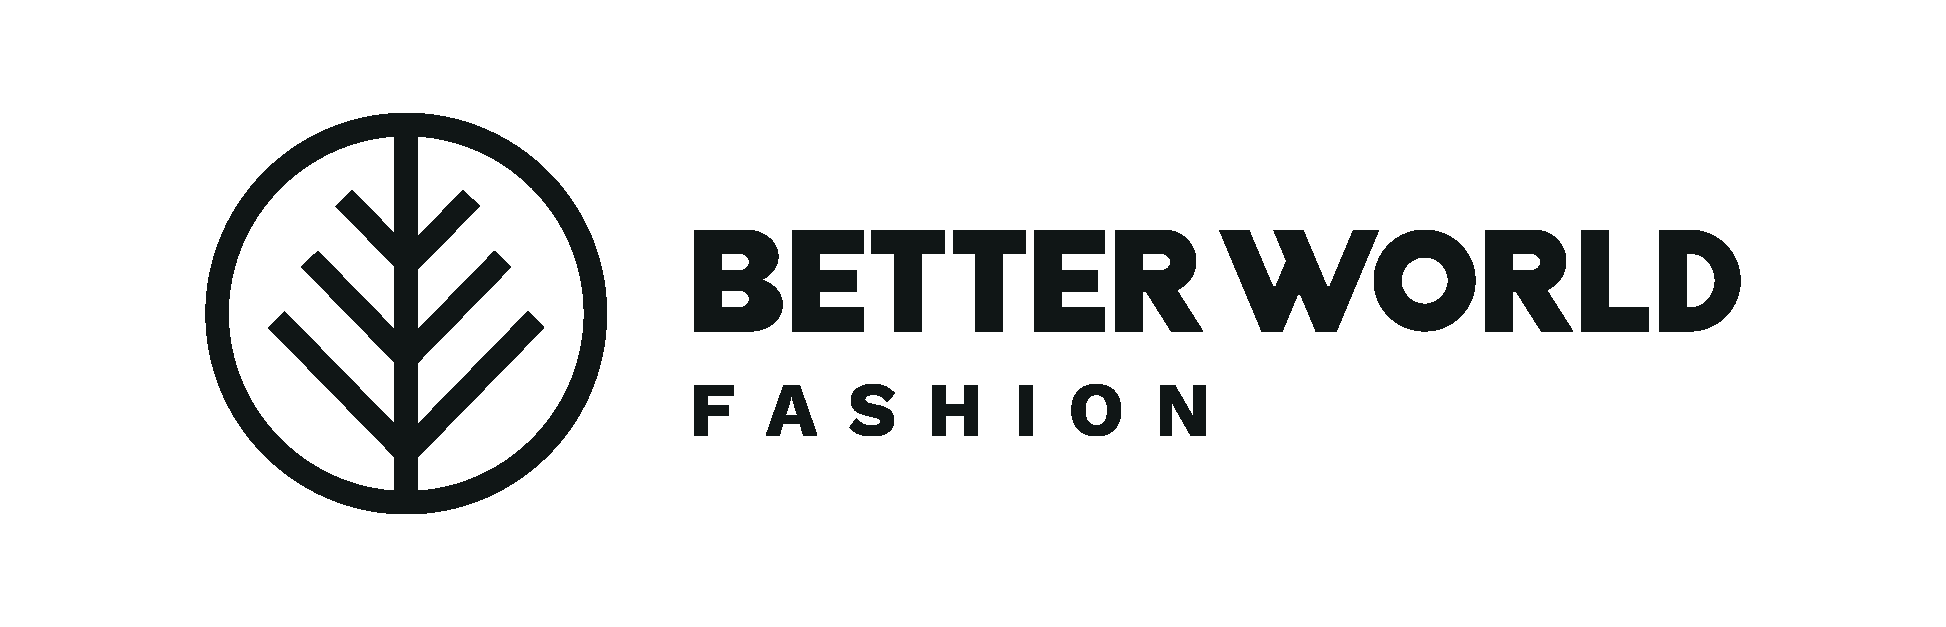 Better World Fashion